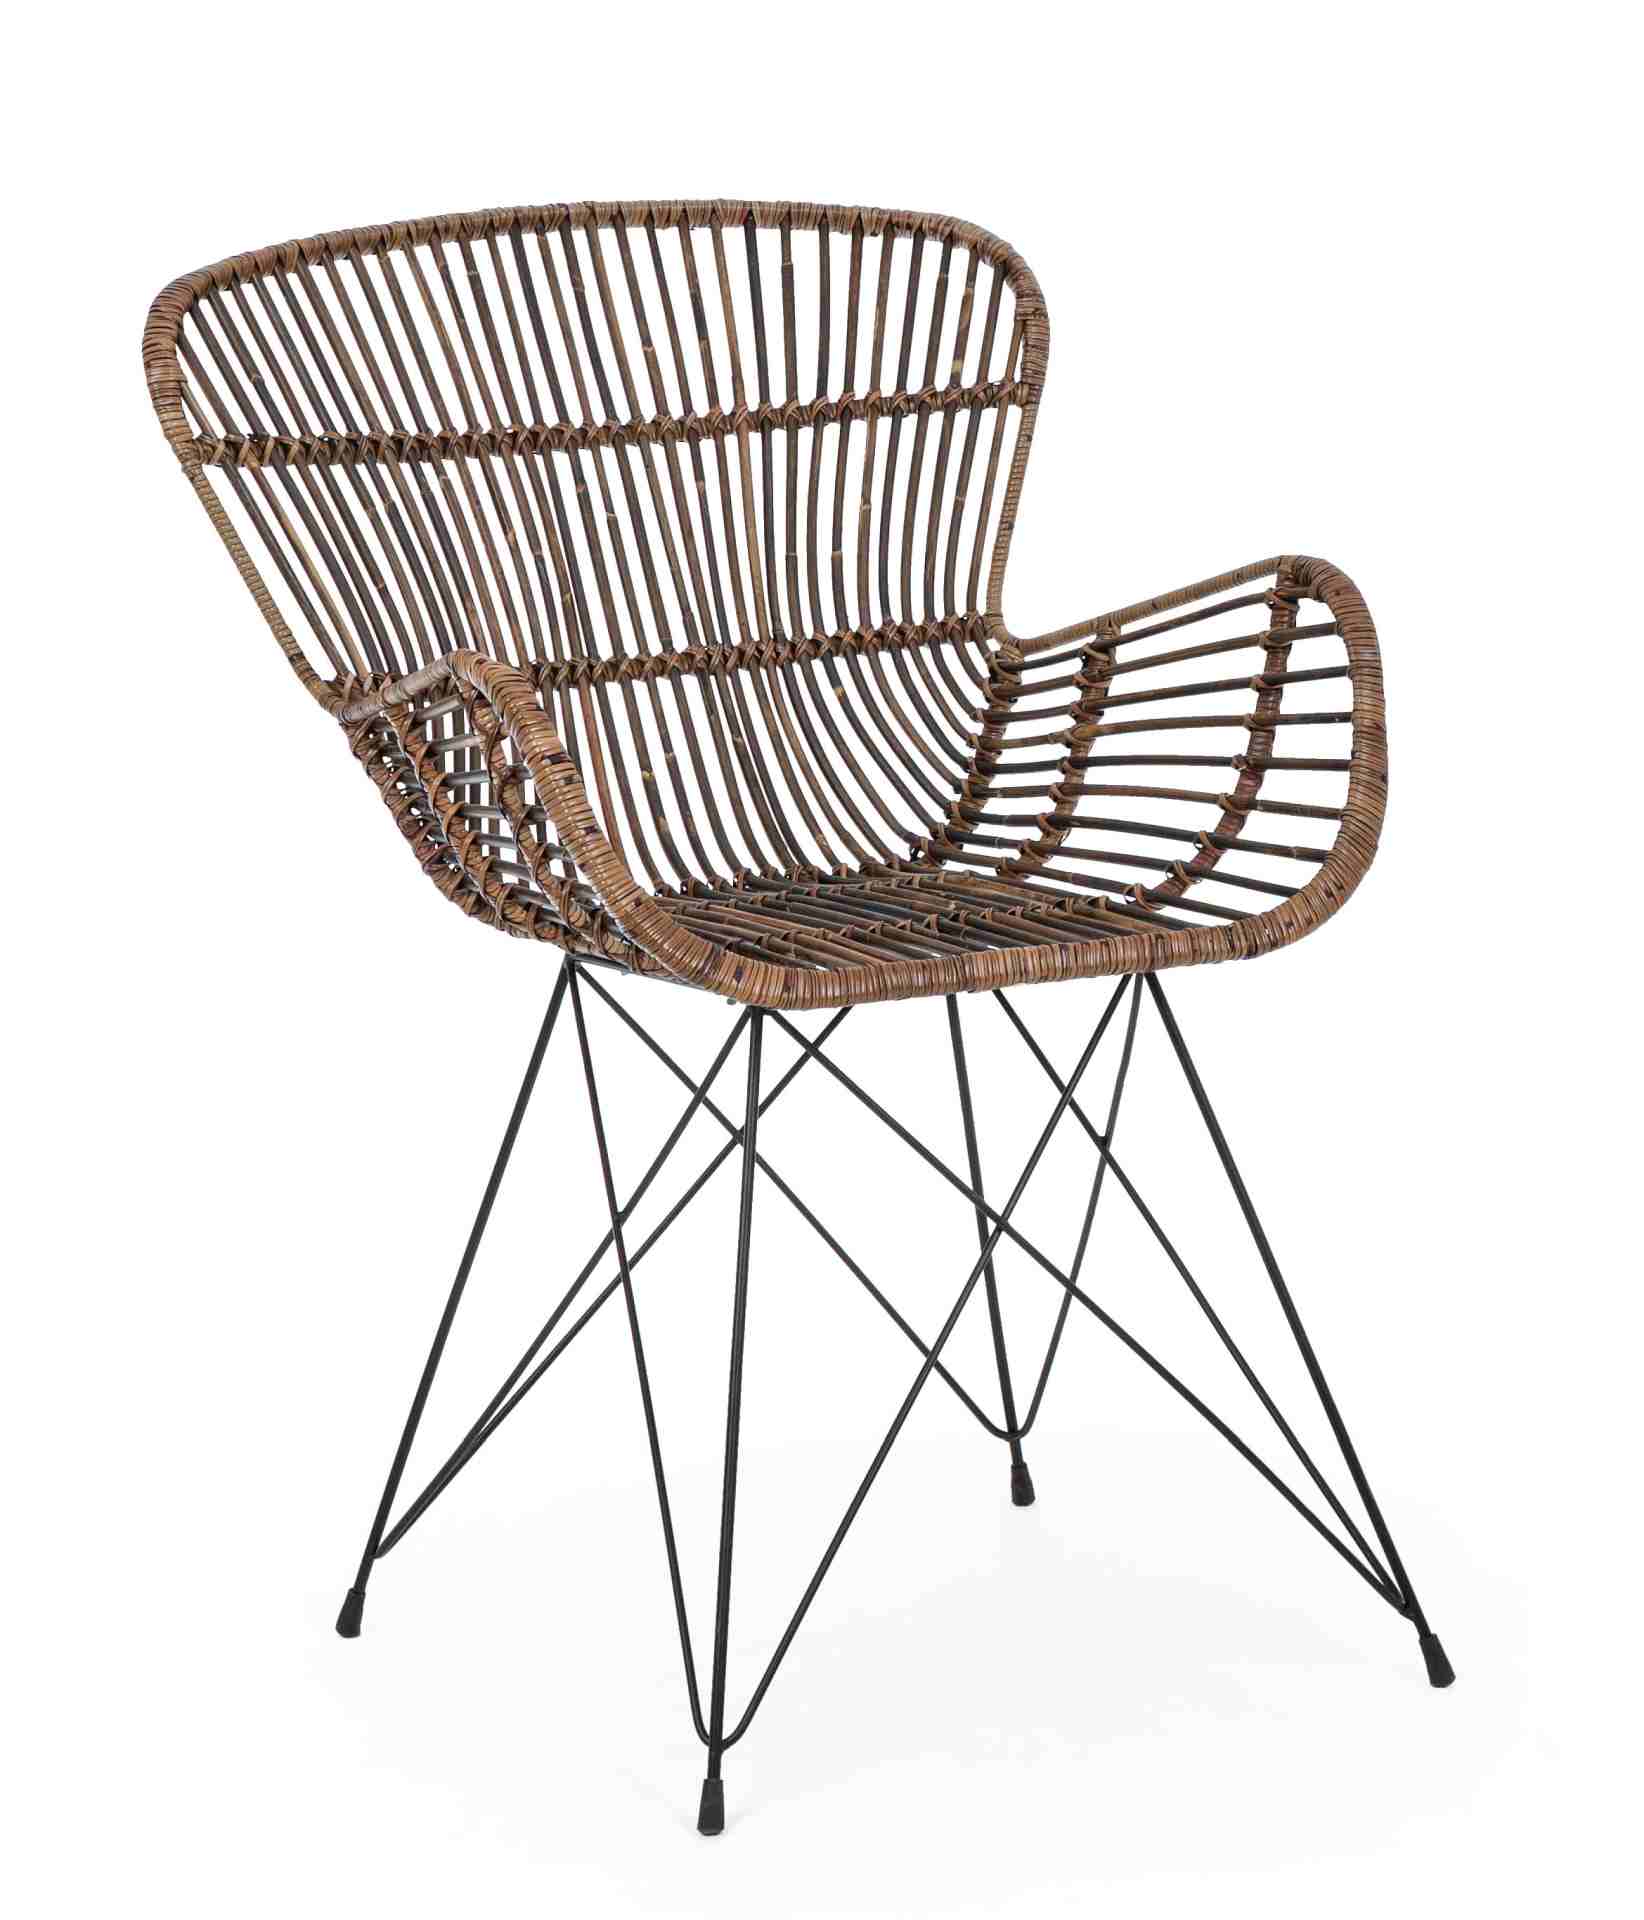 Der Sessel Venturs überzeugt mit seinem klassischen Design. Gefertigt wurde er aus Rattan, welches einen braunen Farbton besitzt. Das Gestell ist aus Metall und hat eine schwarze Farbe. Der Sessel besitzt eine Sitzhöhe von 46 cm. Die Breite beträgt 62 cm.